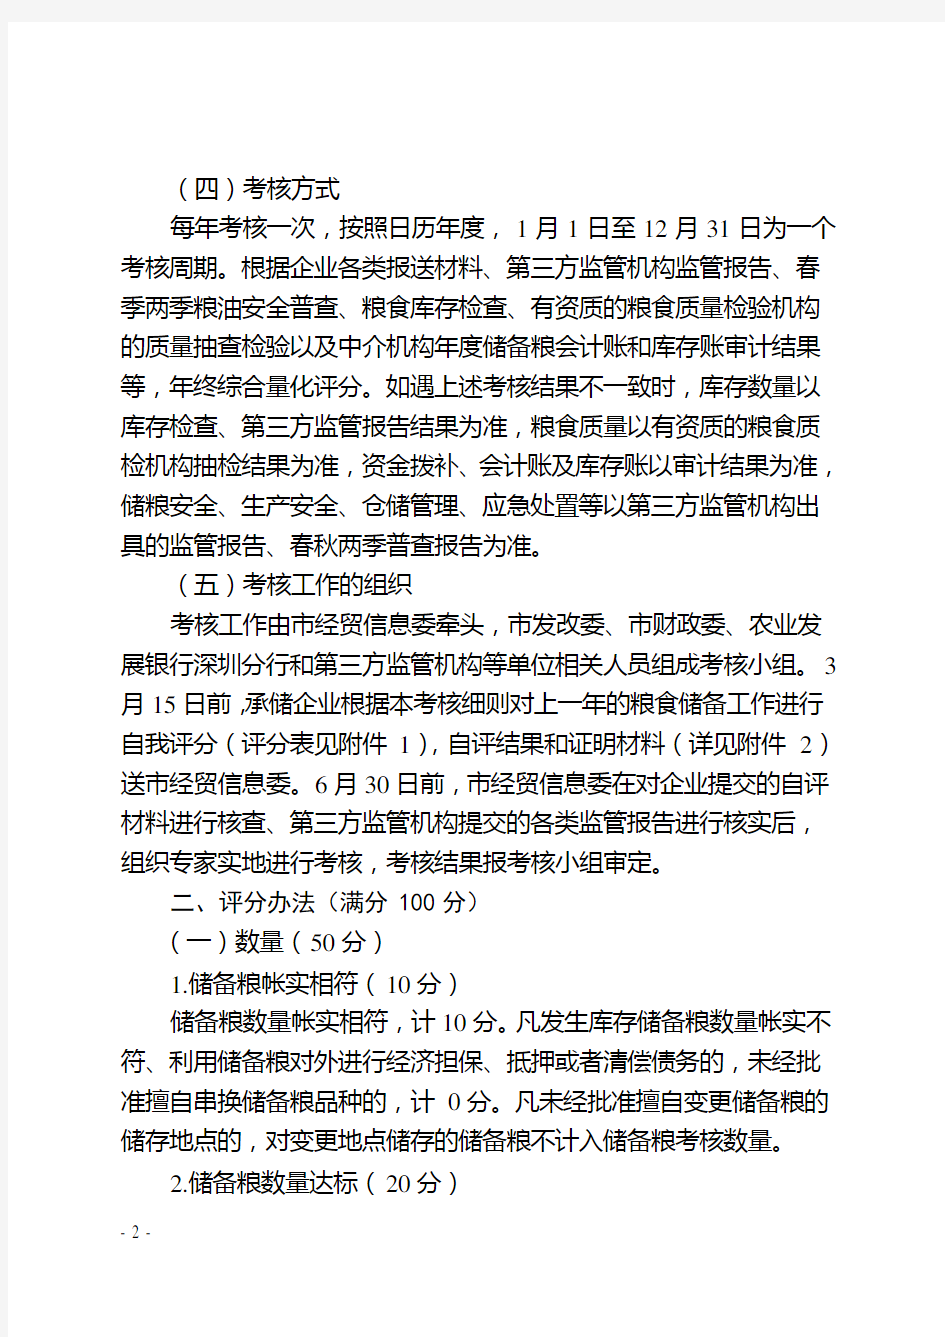 深圳粮食储备承储管理年考核细则征求意见稿